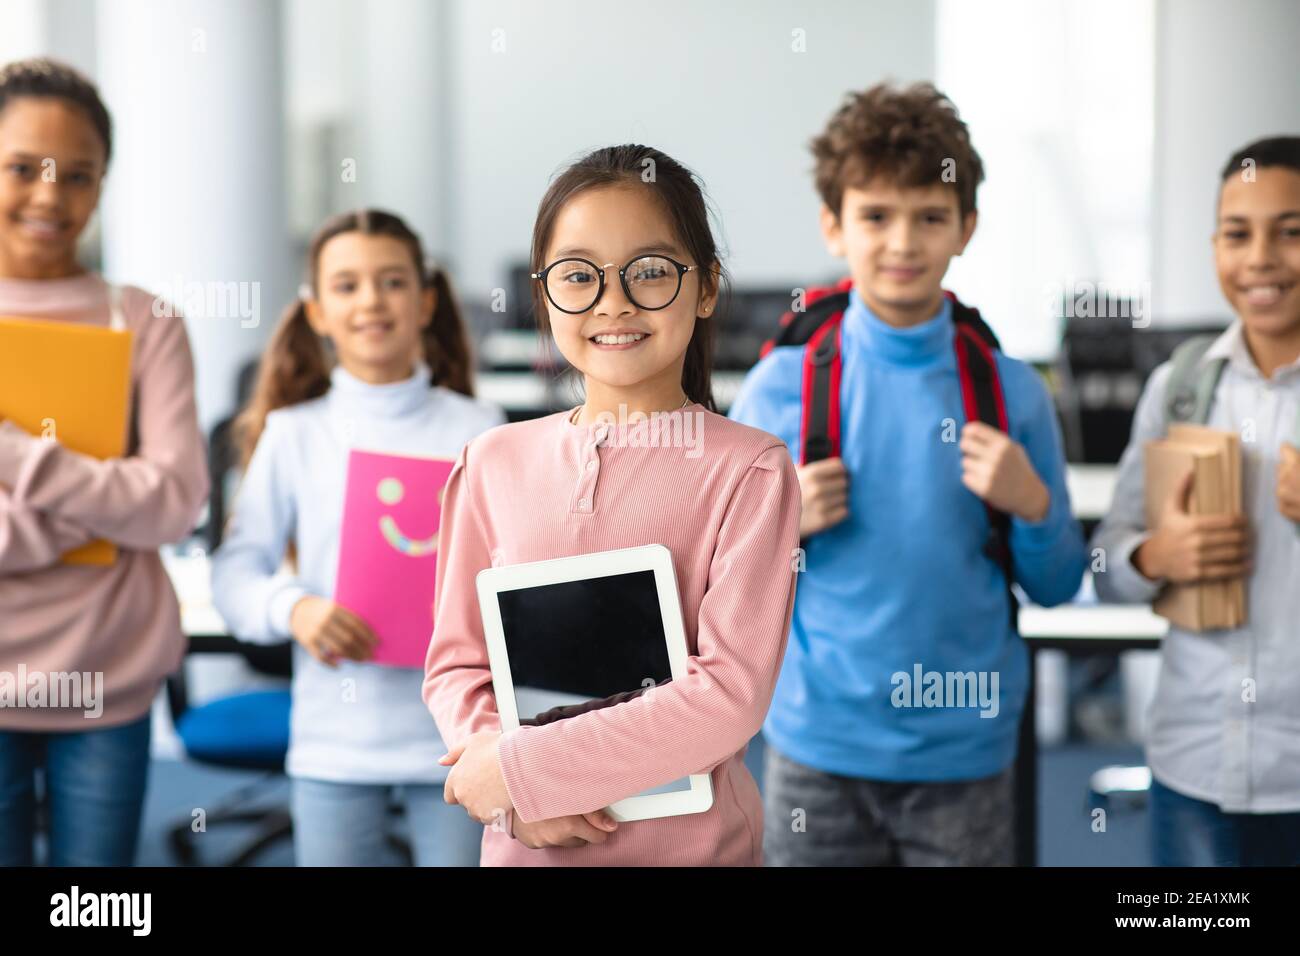 Lächelnd asiatische Mädchen halten Tablette stehen mit Klassenkameraden Stockfoto